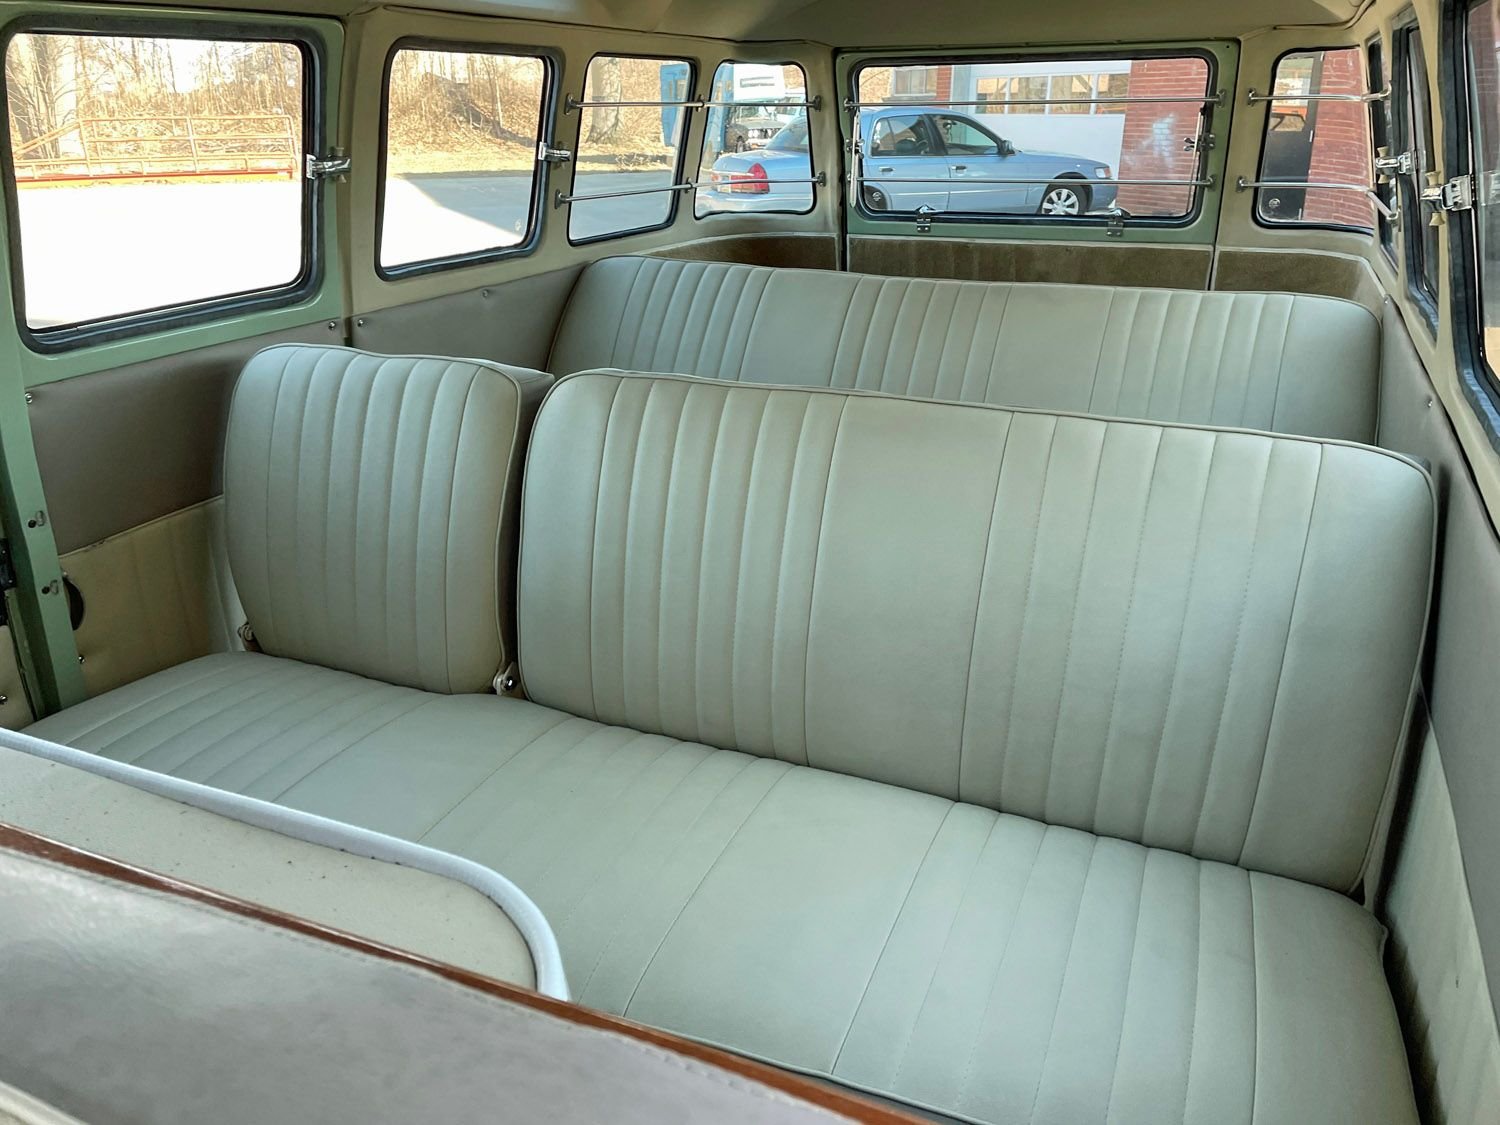 1964 Volkswagen 23 Window Bus